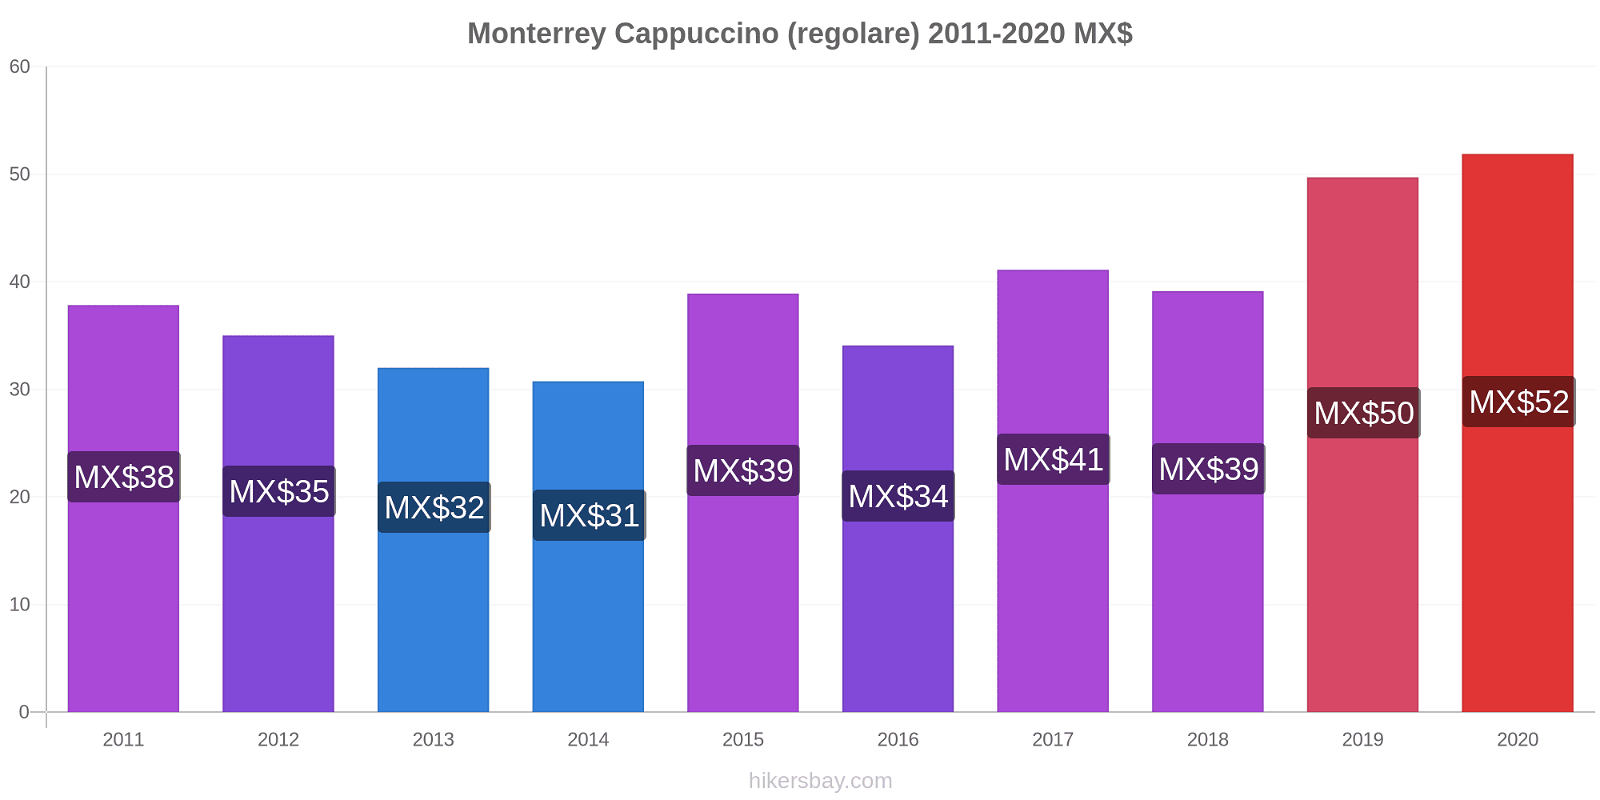 Monterrey variazioni di prezzo Cappuccino (normale) hikersbay.com